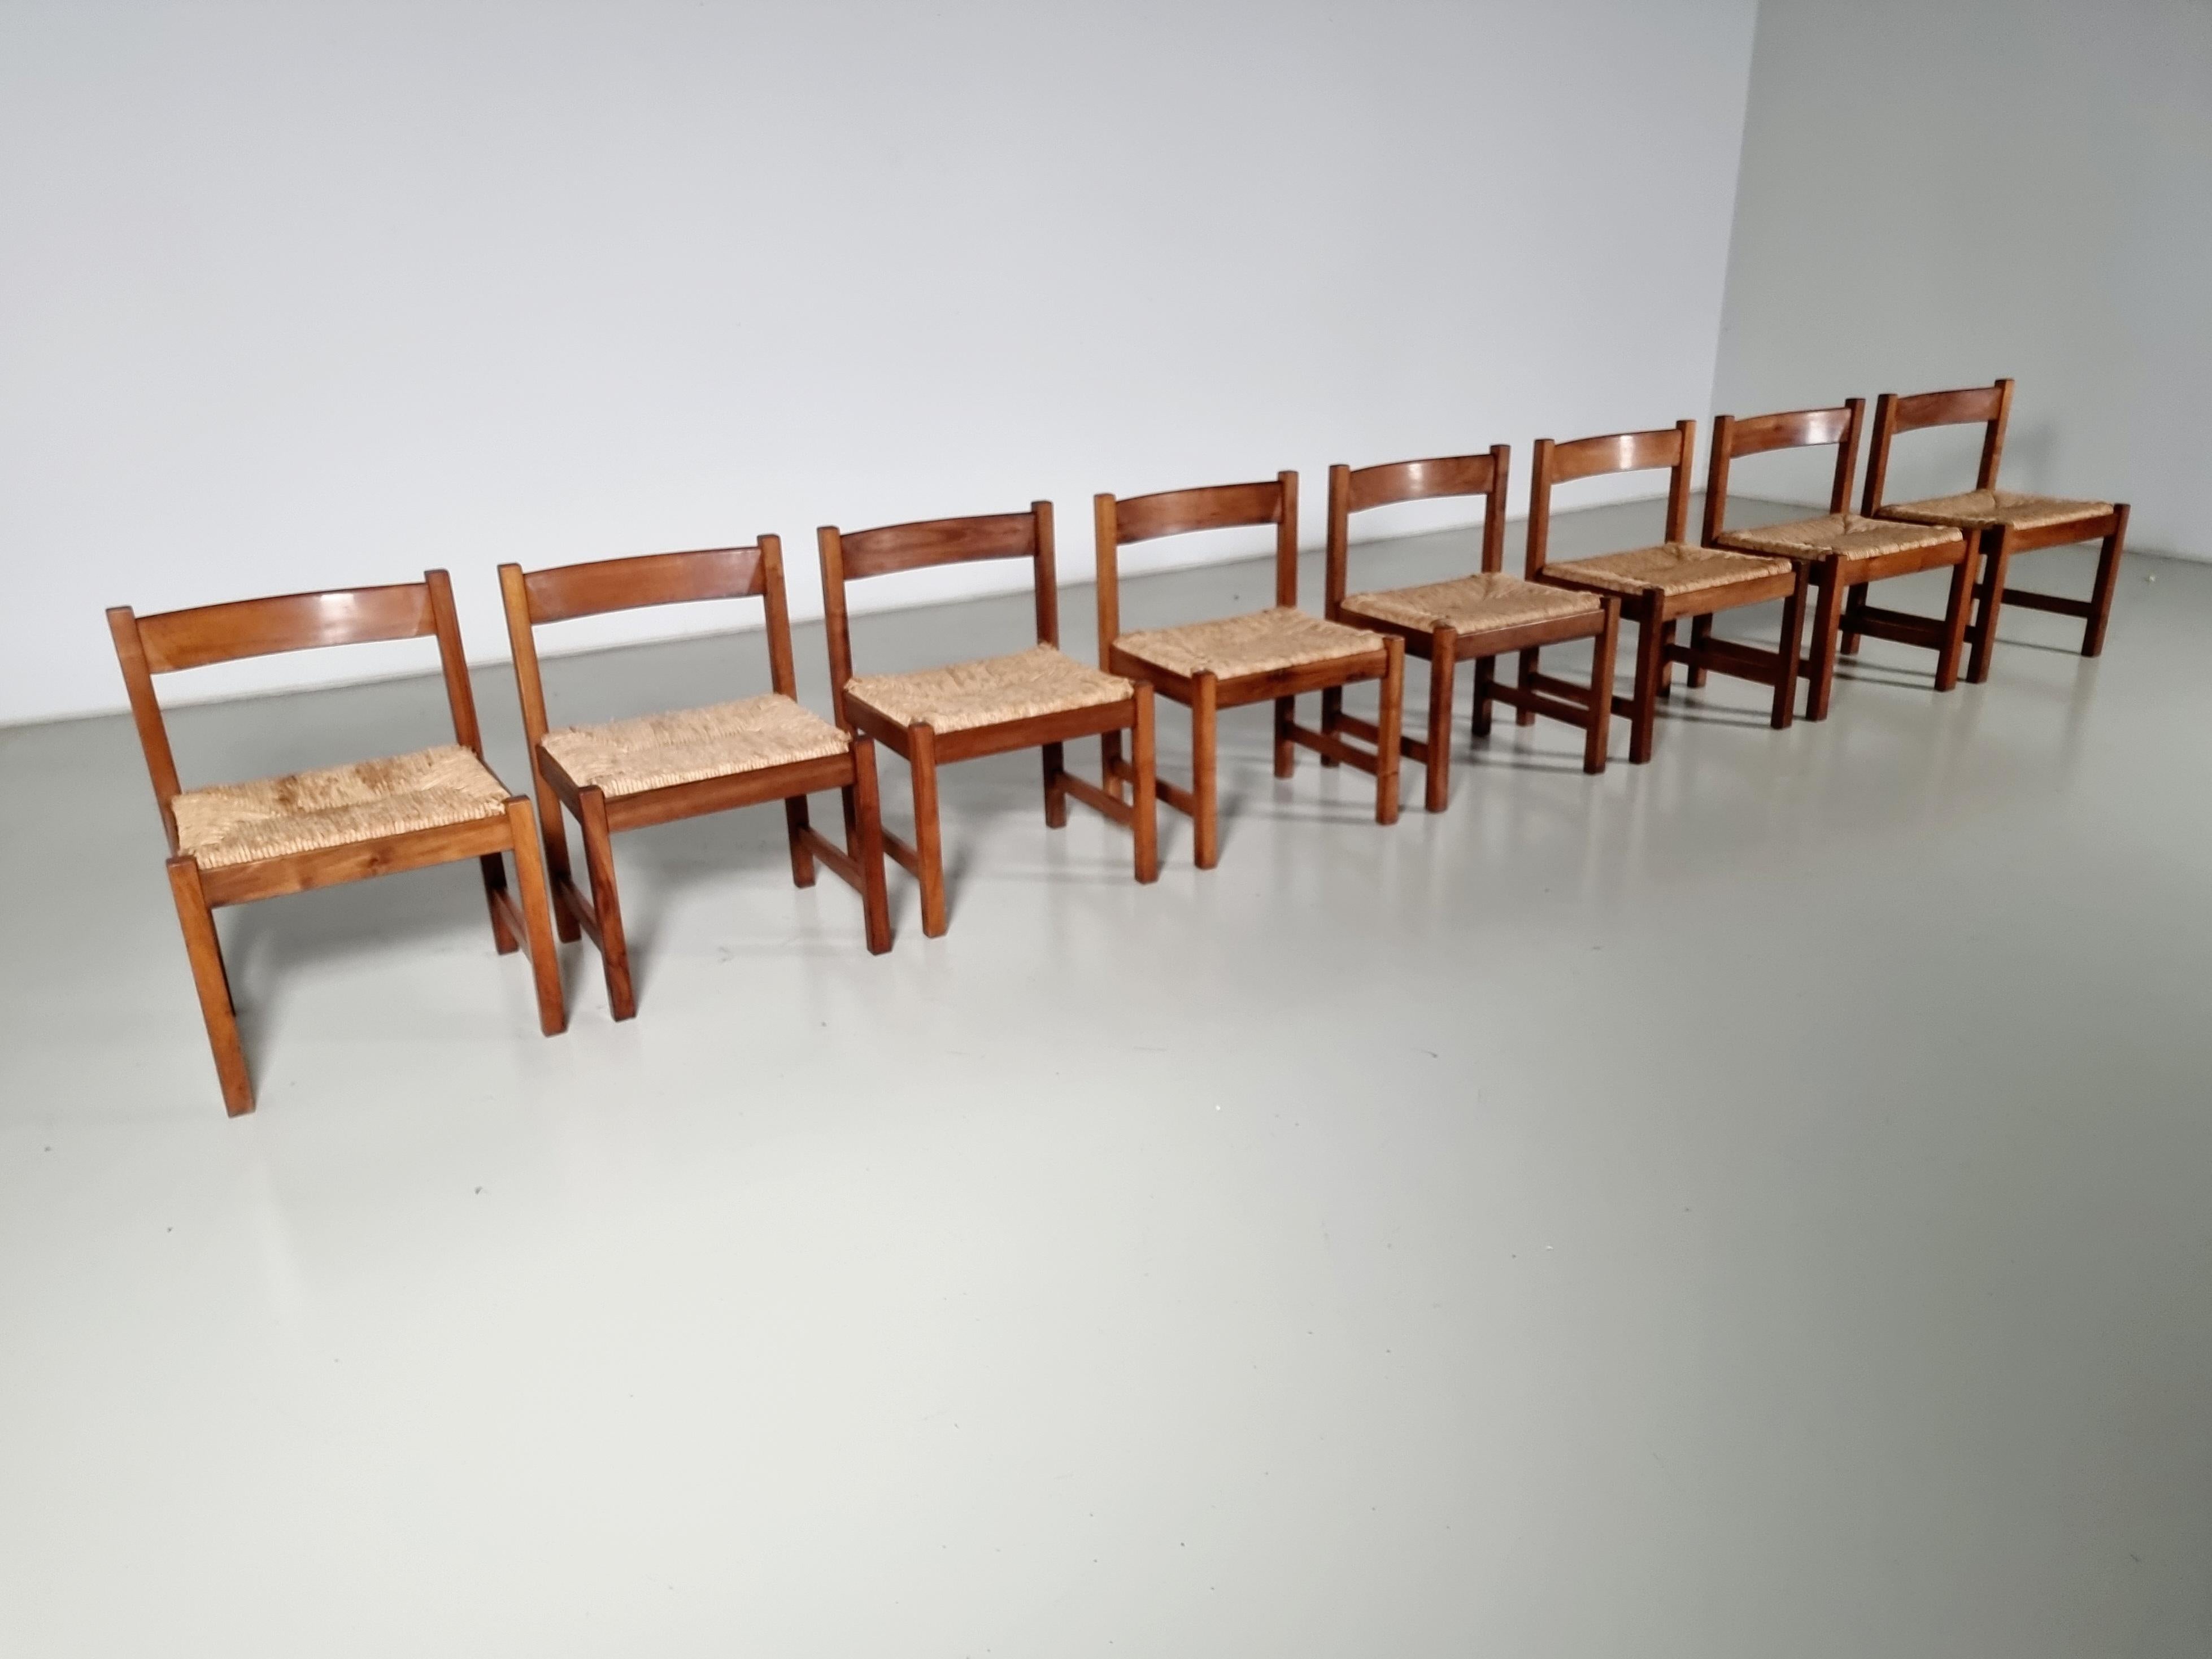 Satz von 8 Esszimmerstühlen aus der Serie Torbecchia, entworfen von Giovanni Michelucci für Poltronova im Jahr 1964.

Struktur aus massivem Nussbaumholz mit gepolsterten Sitzen aus Binsen. Die Massivholzstühle haben im Laufe der Jahre eine